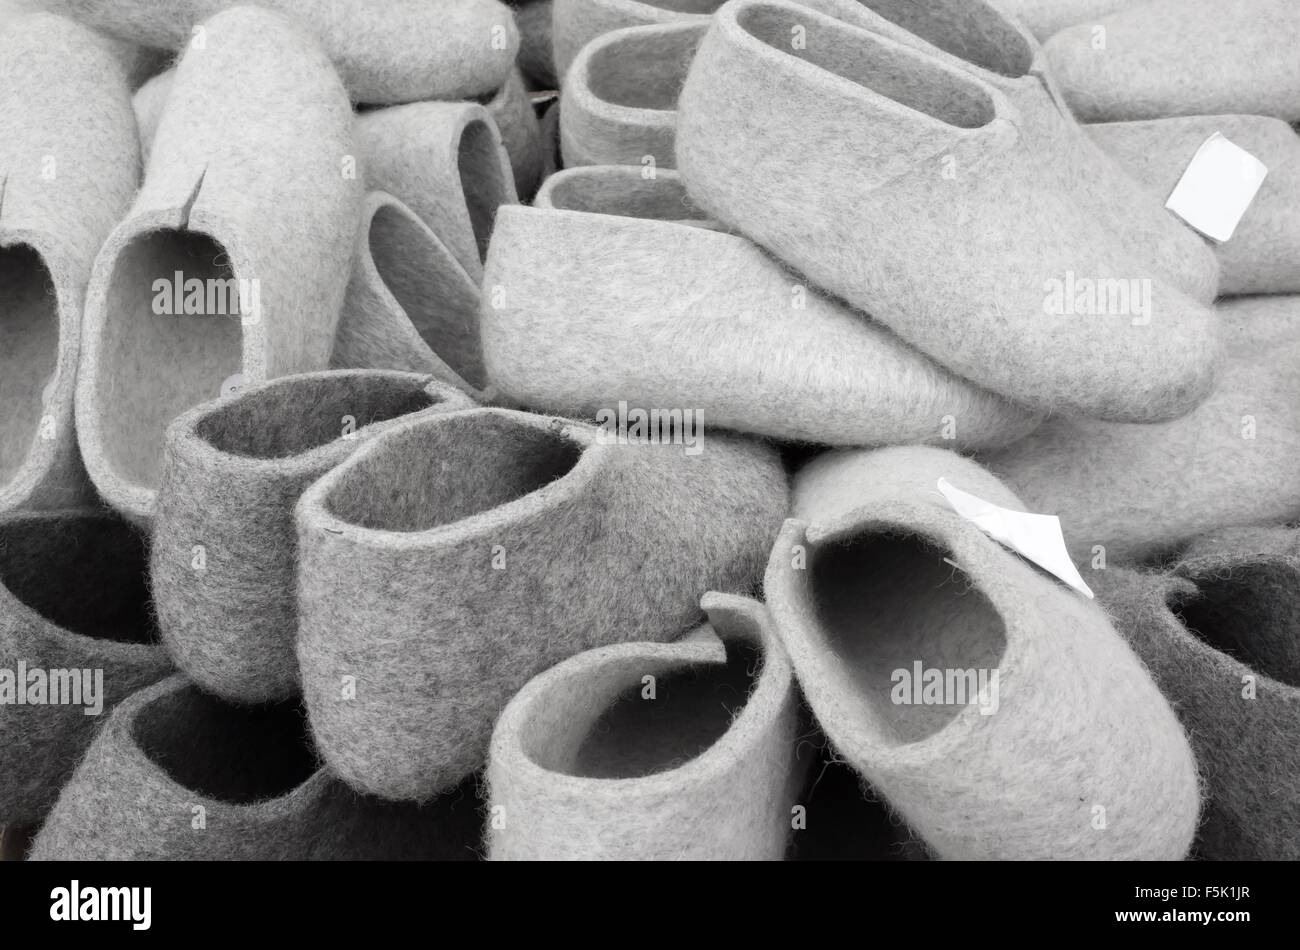 Pile de feutre gris chaussons sur juste traditionnel finlandais Photo Stock  - Alamy